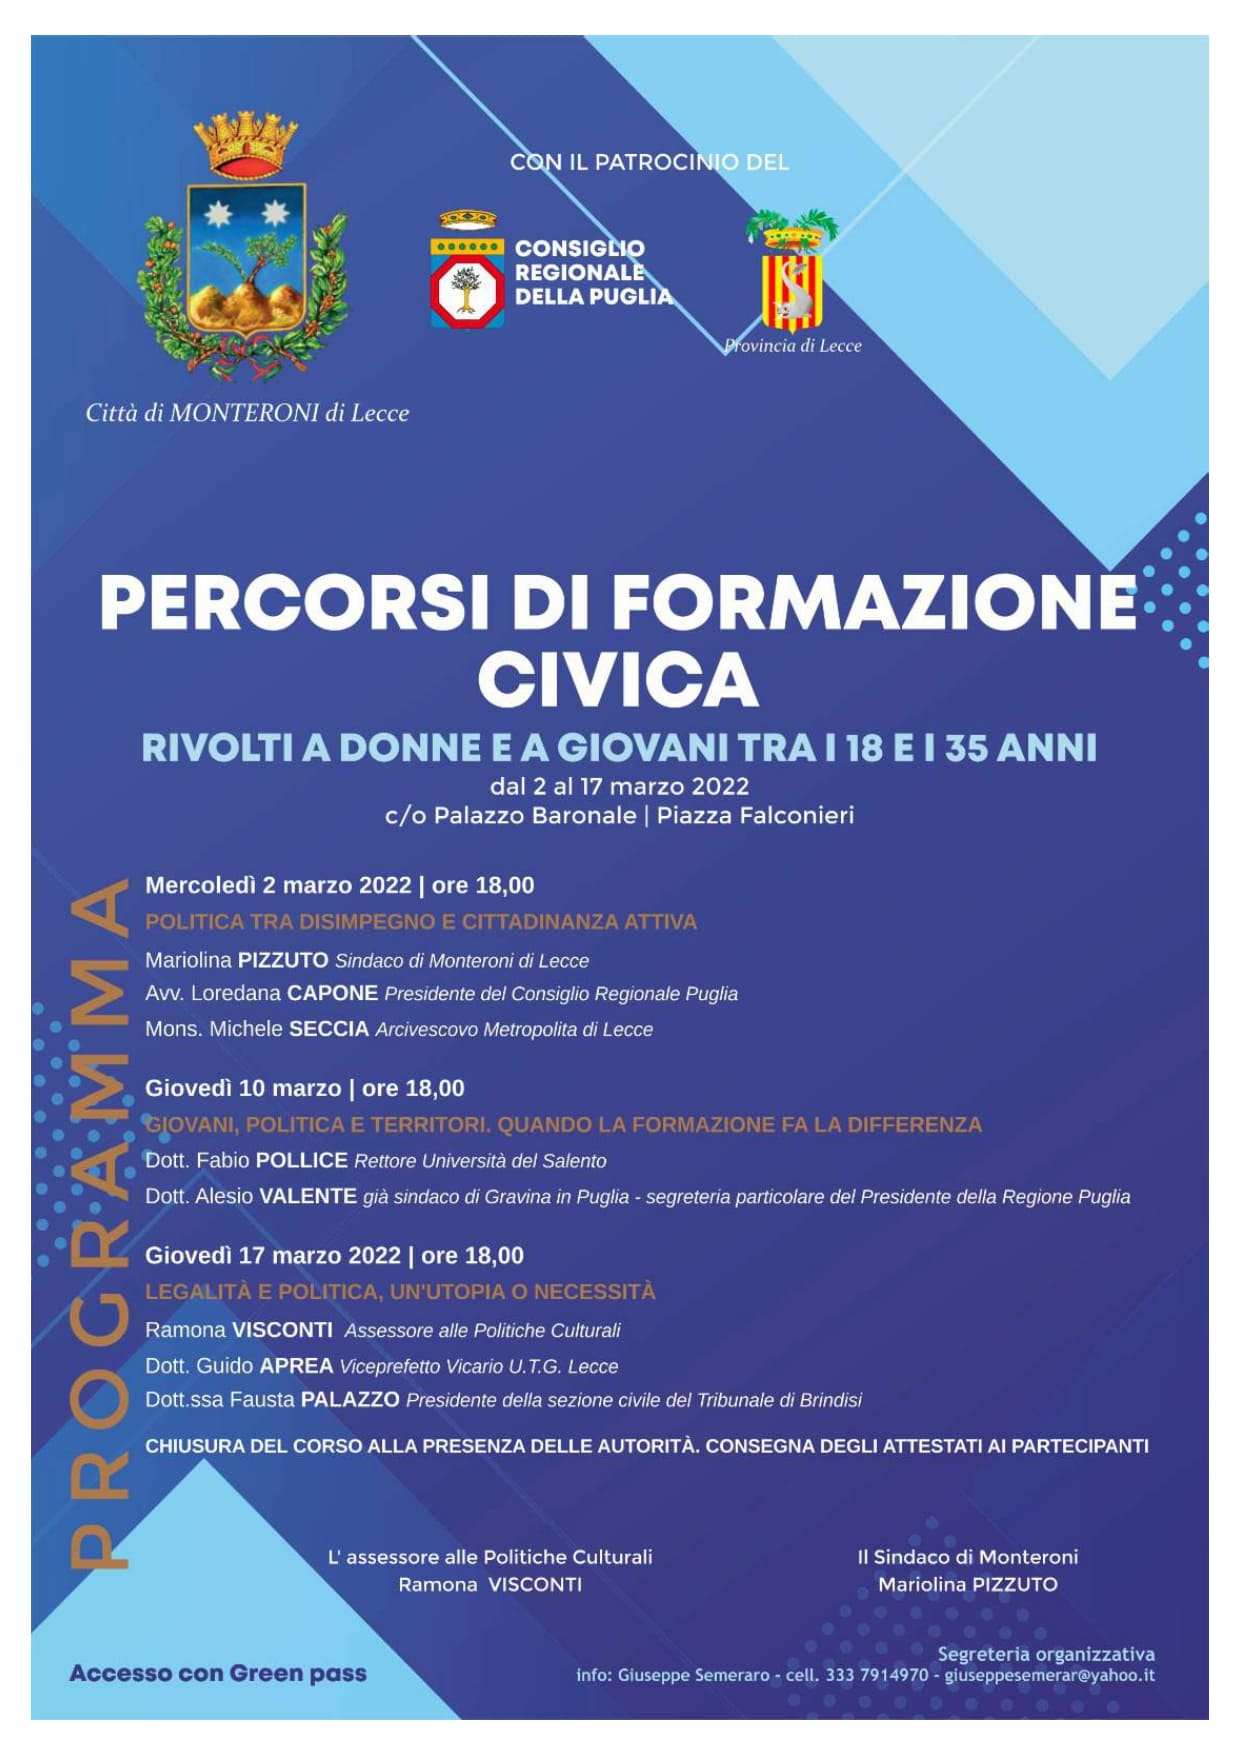 Percorsi di Formazione Civica. Per una politica giovane, etica e rispettosa a Monteroni di Lecce